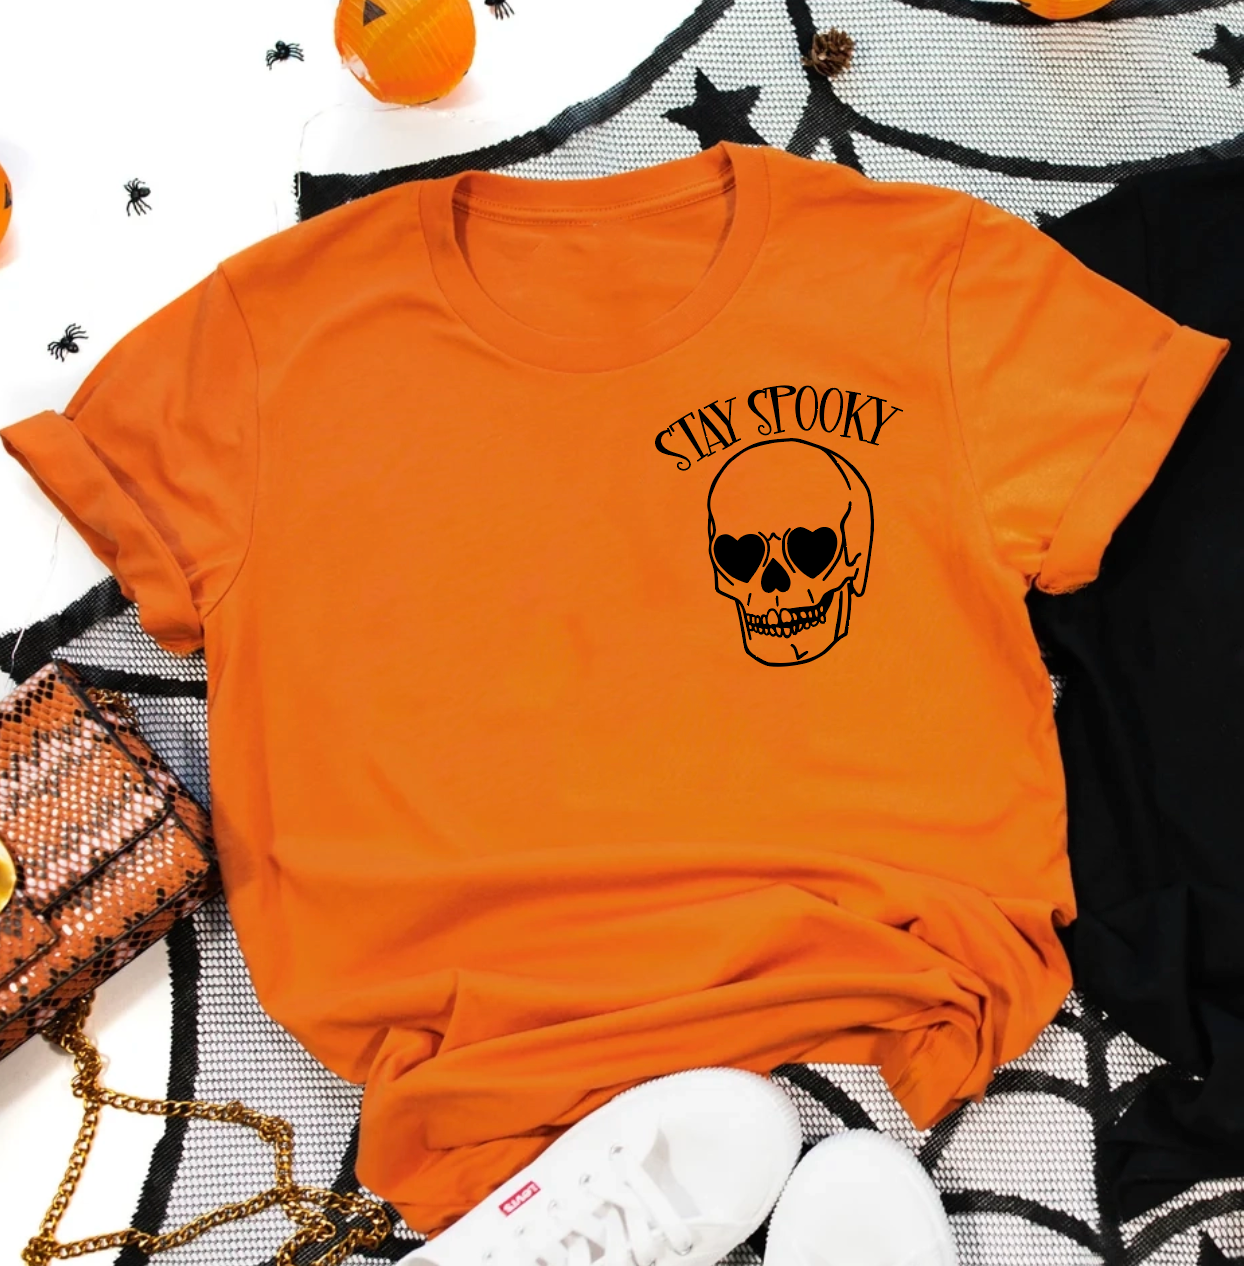 Stay Spooky (orange pocket tee)